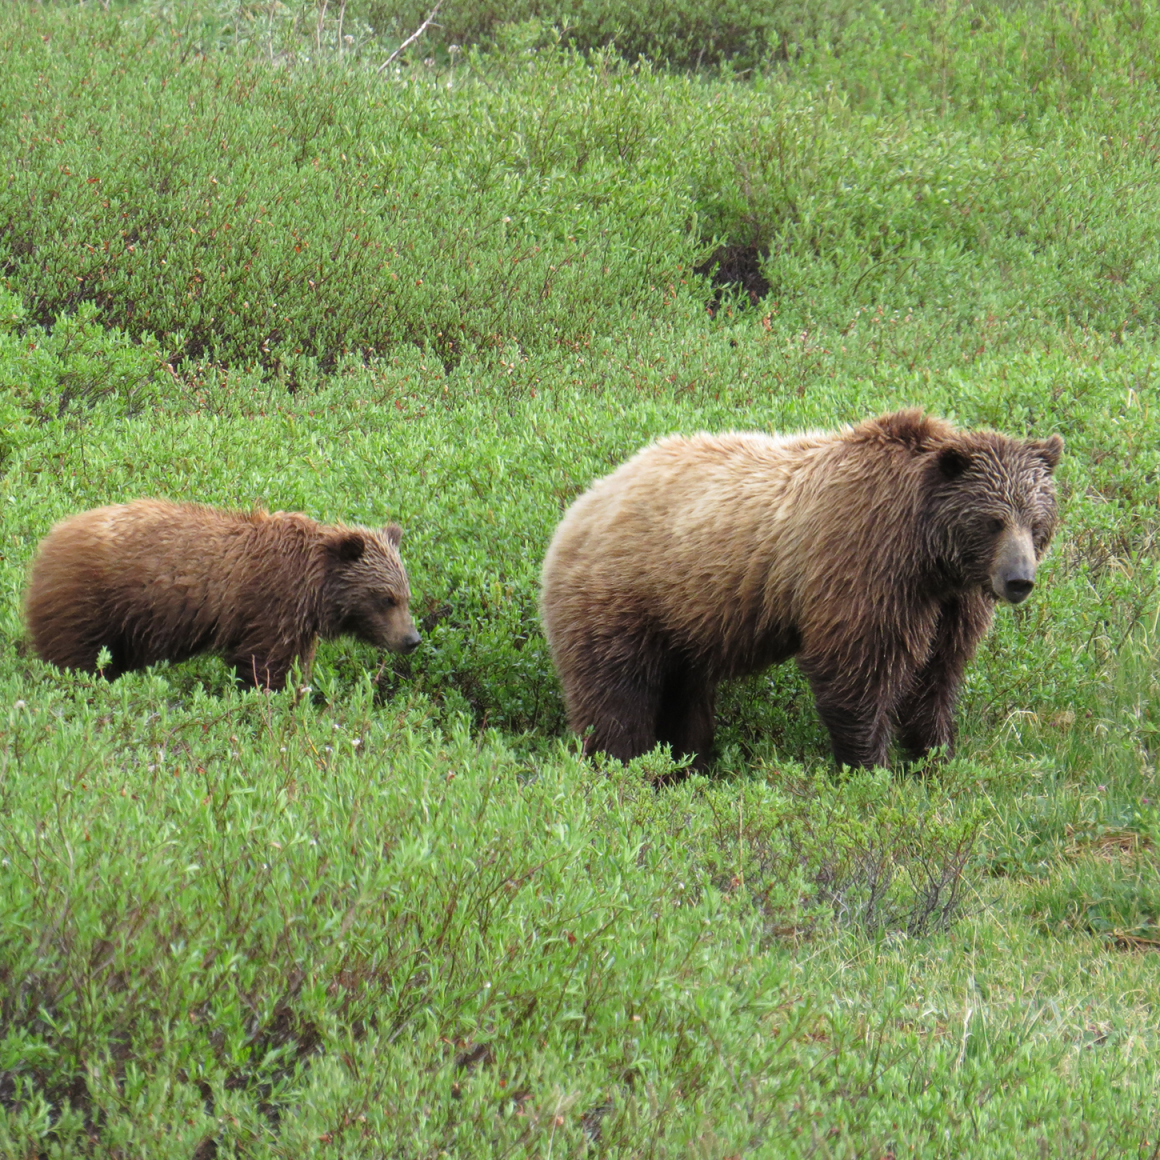 Bears in wild in Alaska